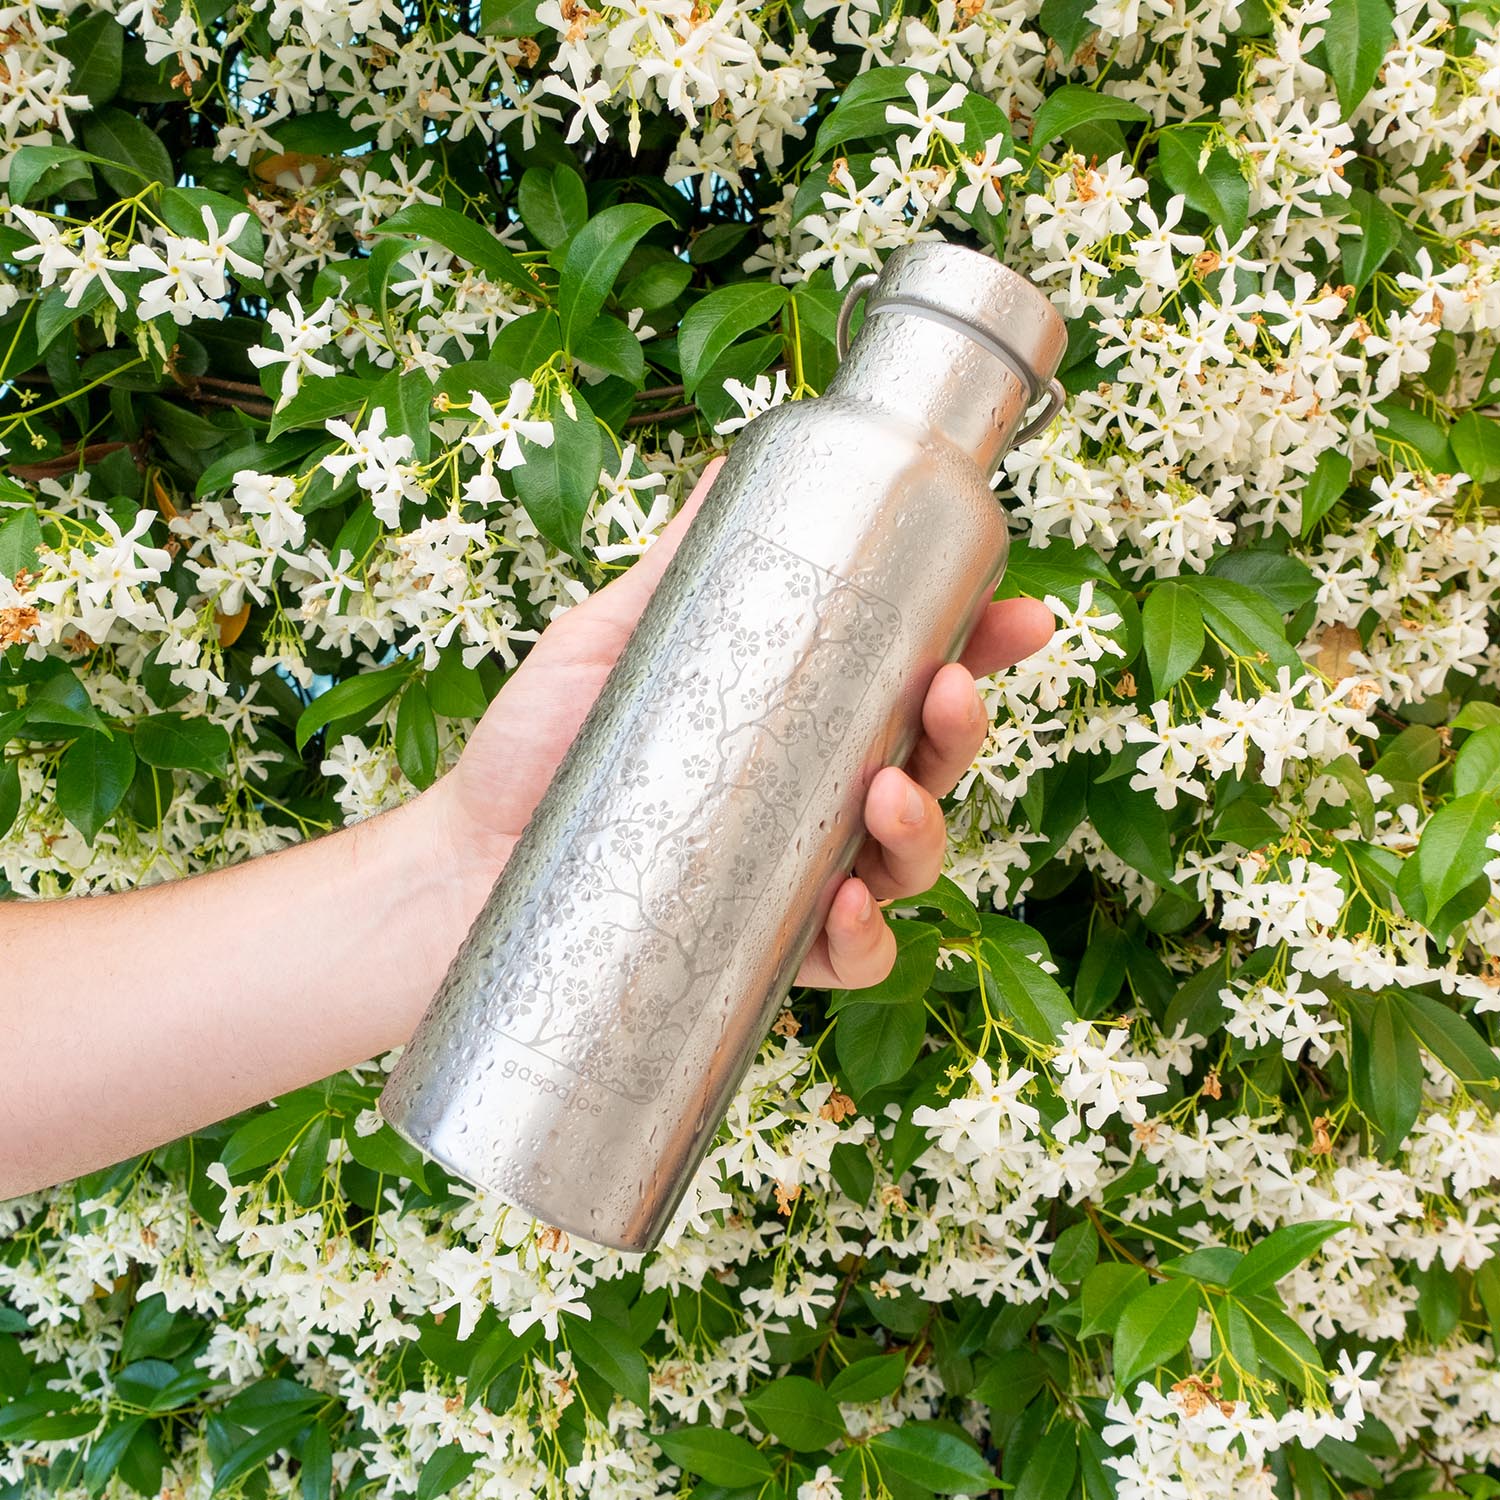 Les beaux jours approchent ! Pensez à la GOURDE INOX : Une alternative saine et zéro déchet aux bouteilles d'eau jetables en plastique !